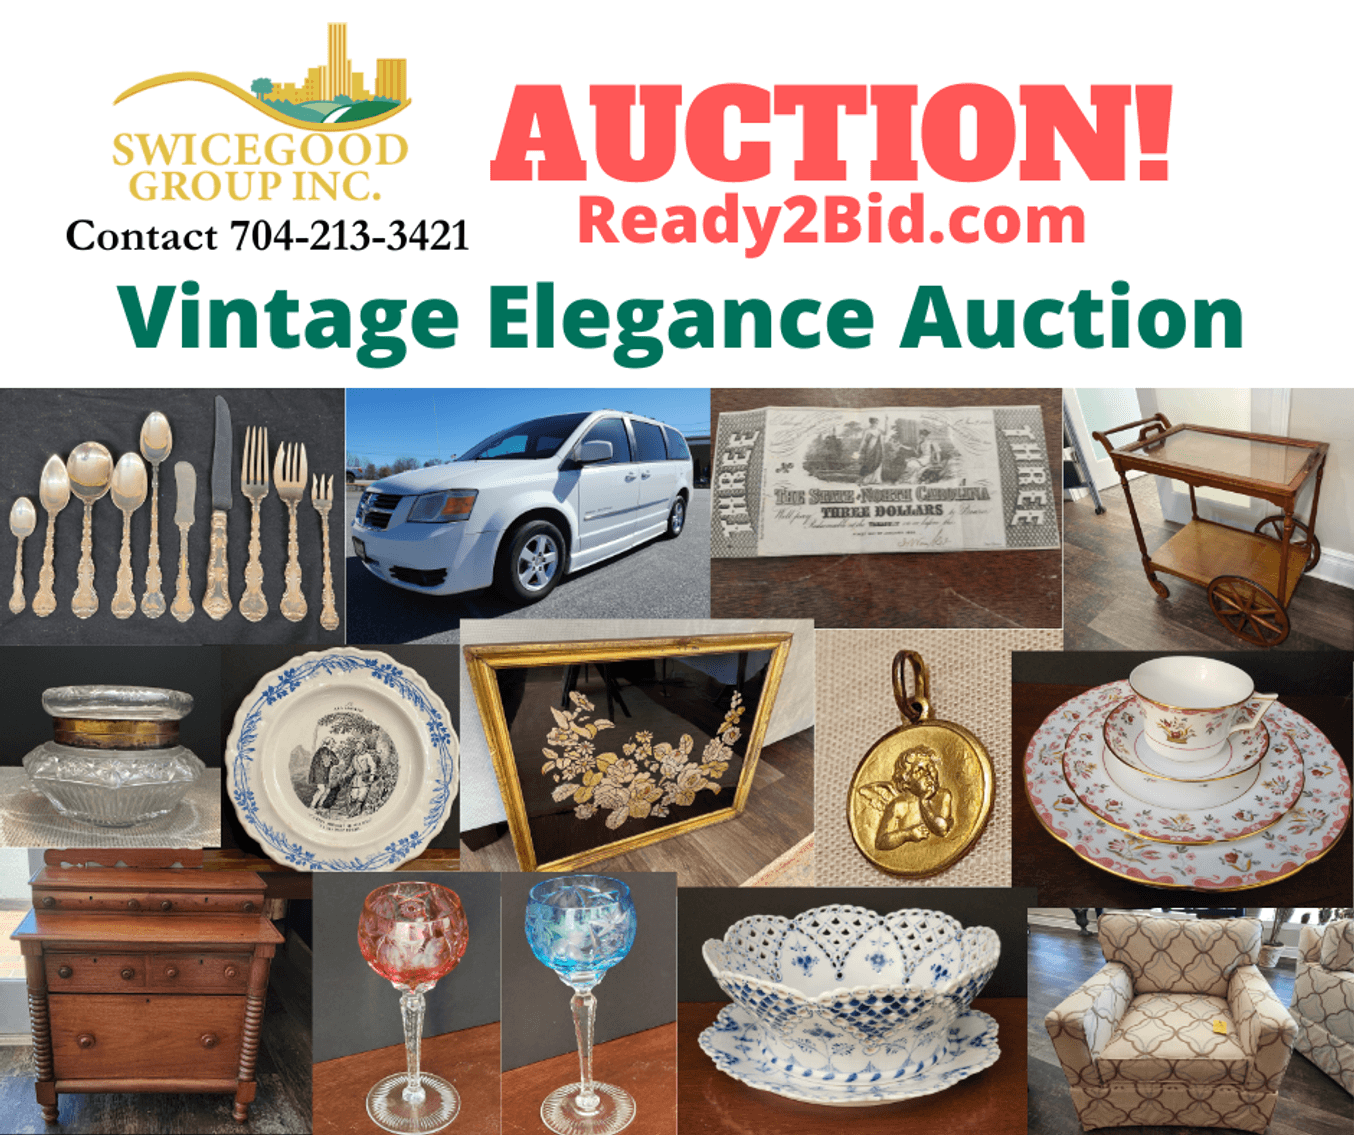 Vintage Elegance Auction